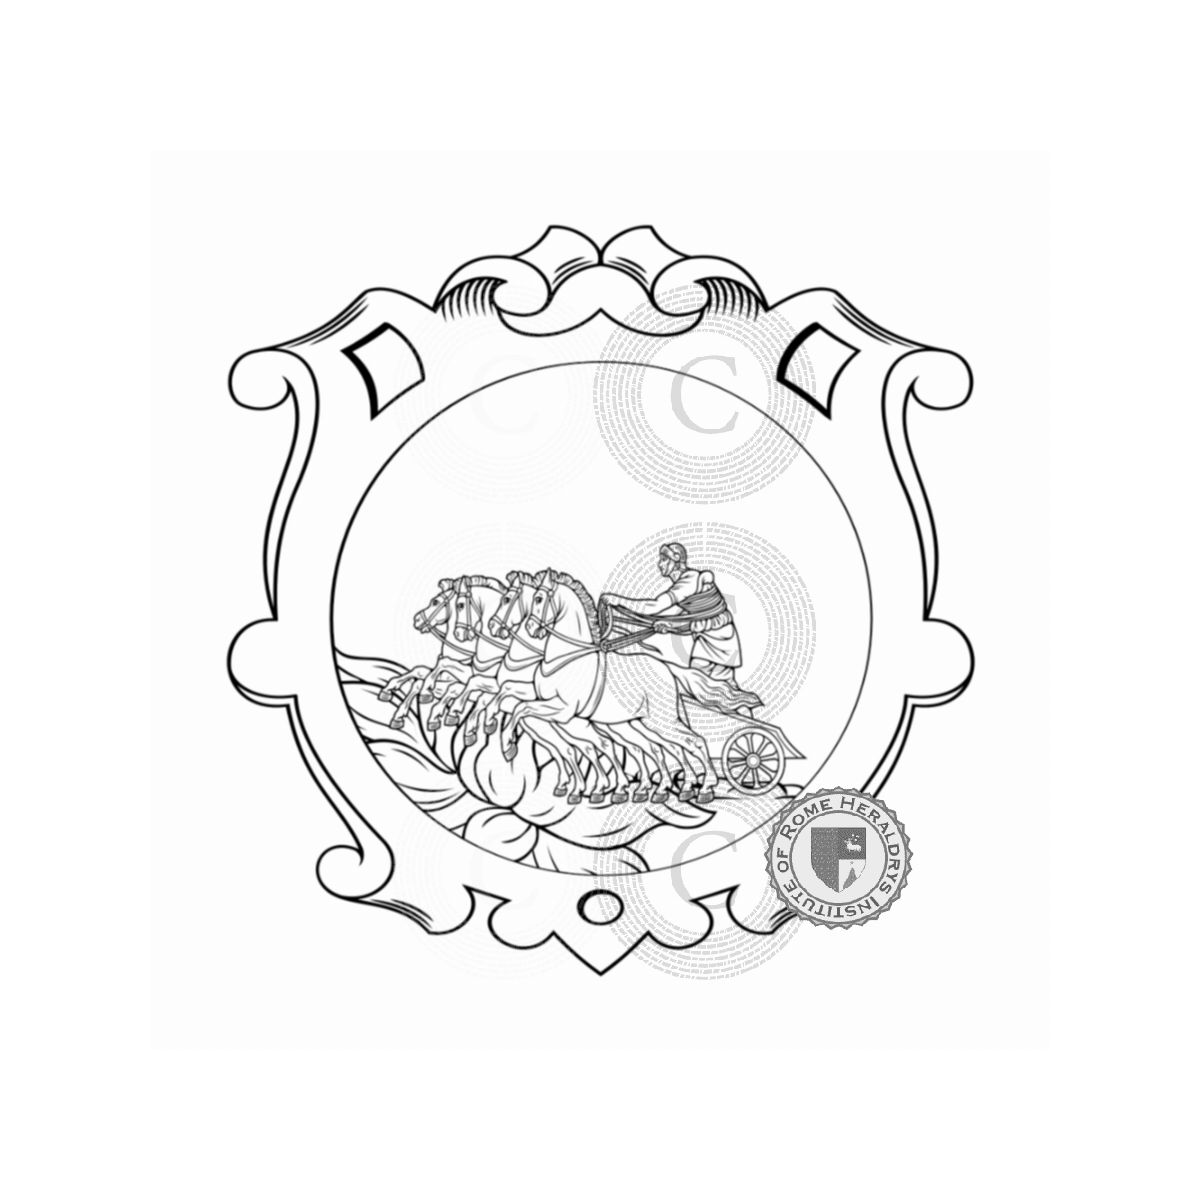 Wappen der FamilieD'Elia, d'Elia